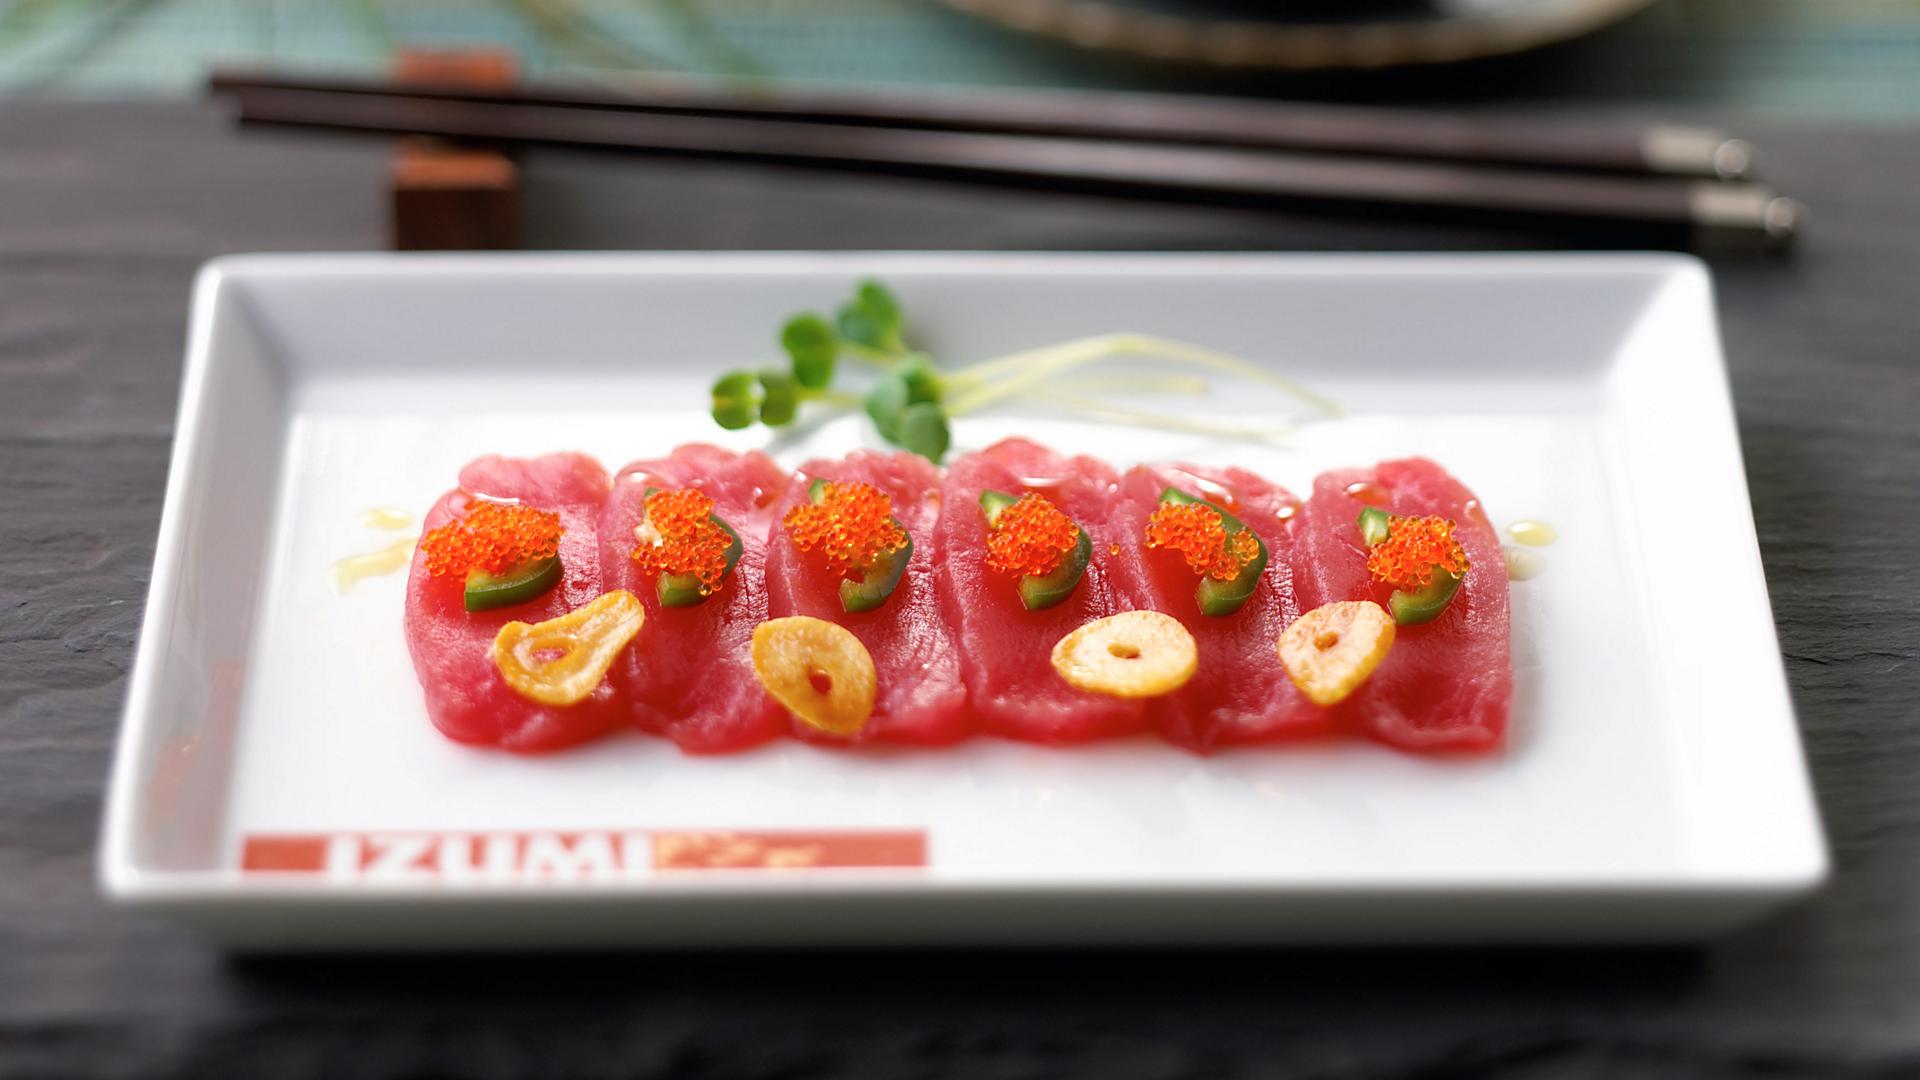 izumi-sushi-platter-food-overview-tile1